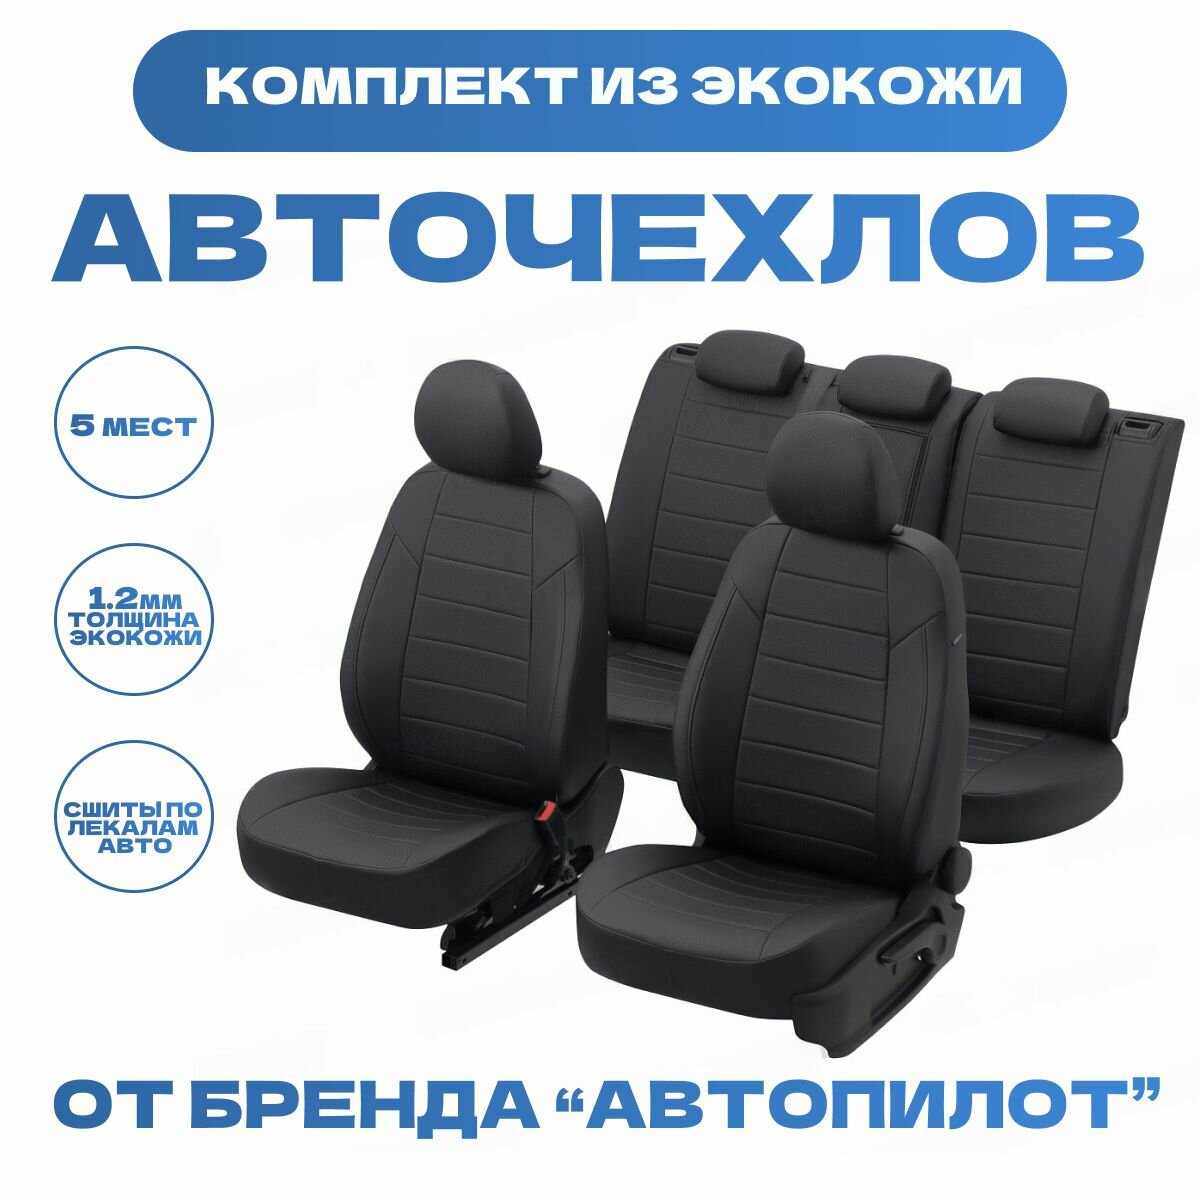 Модельные авточехлы АВТОПИЛОТ для Hyundai Solaris I (седан, задний диван - сплошной, 2010-2017г) экокожа, черные